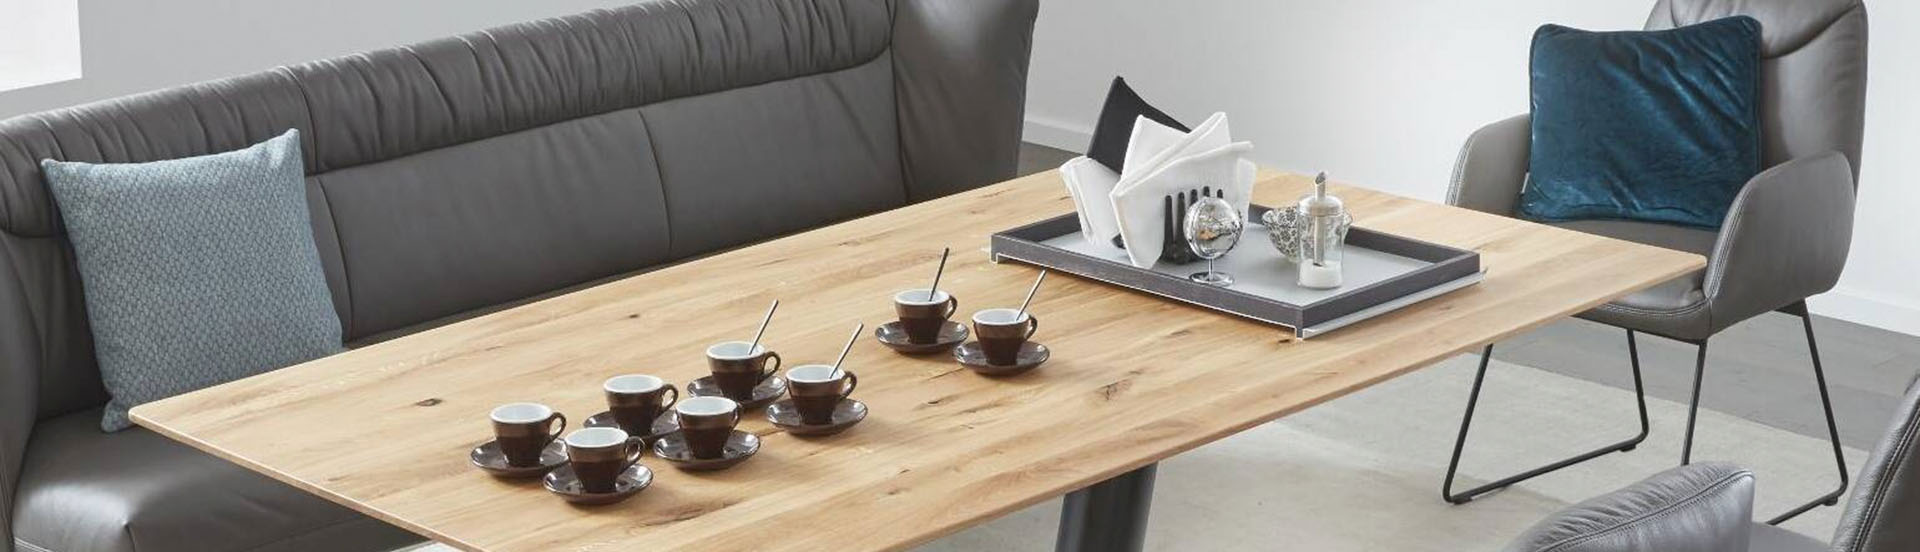 Tischgruppe mit Lederbank und gepolstertem Stuhl - auf dem Tisch 8 Espresso-Tassen und ein hübsch dekoriertes Tablett.